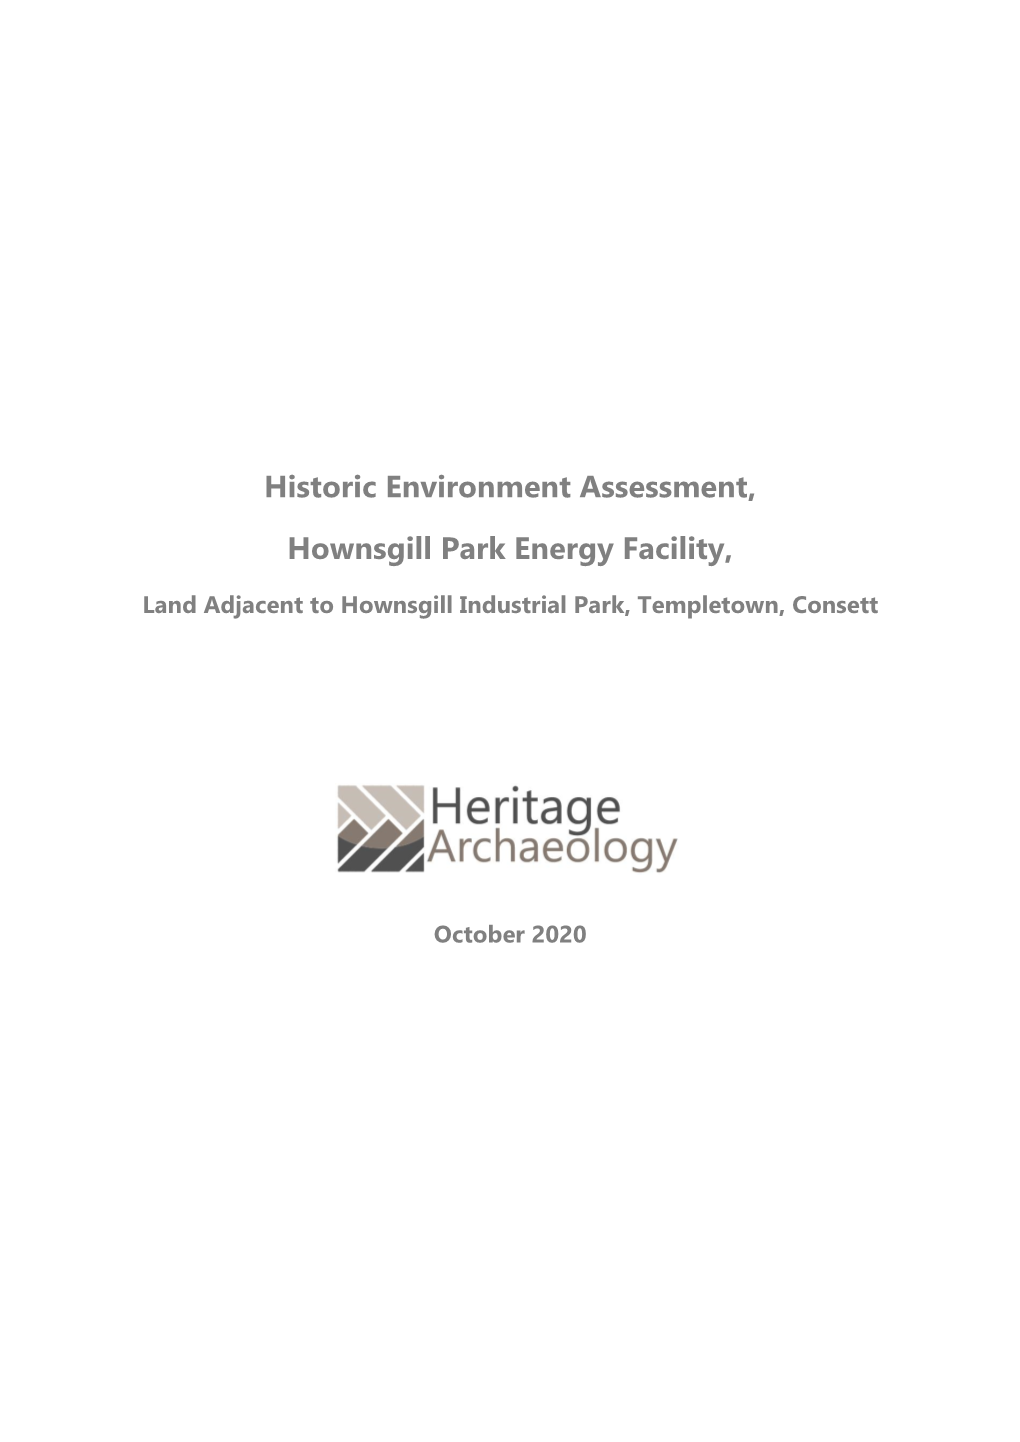 Historic Environment Assessment, Hownsgill Park Energy Facility